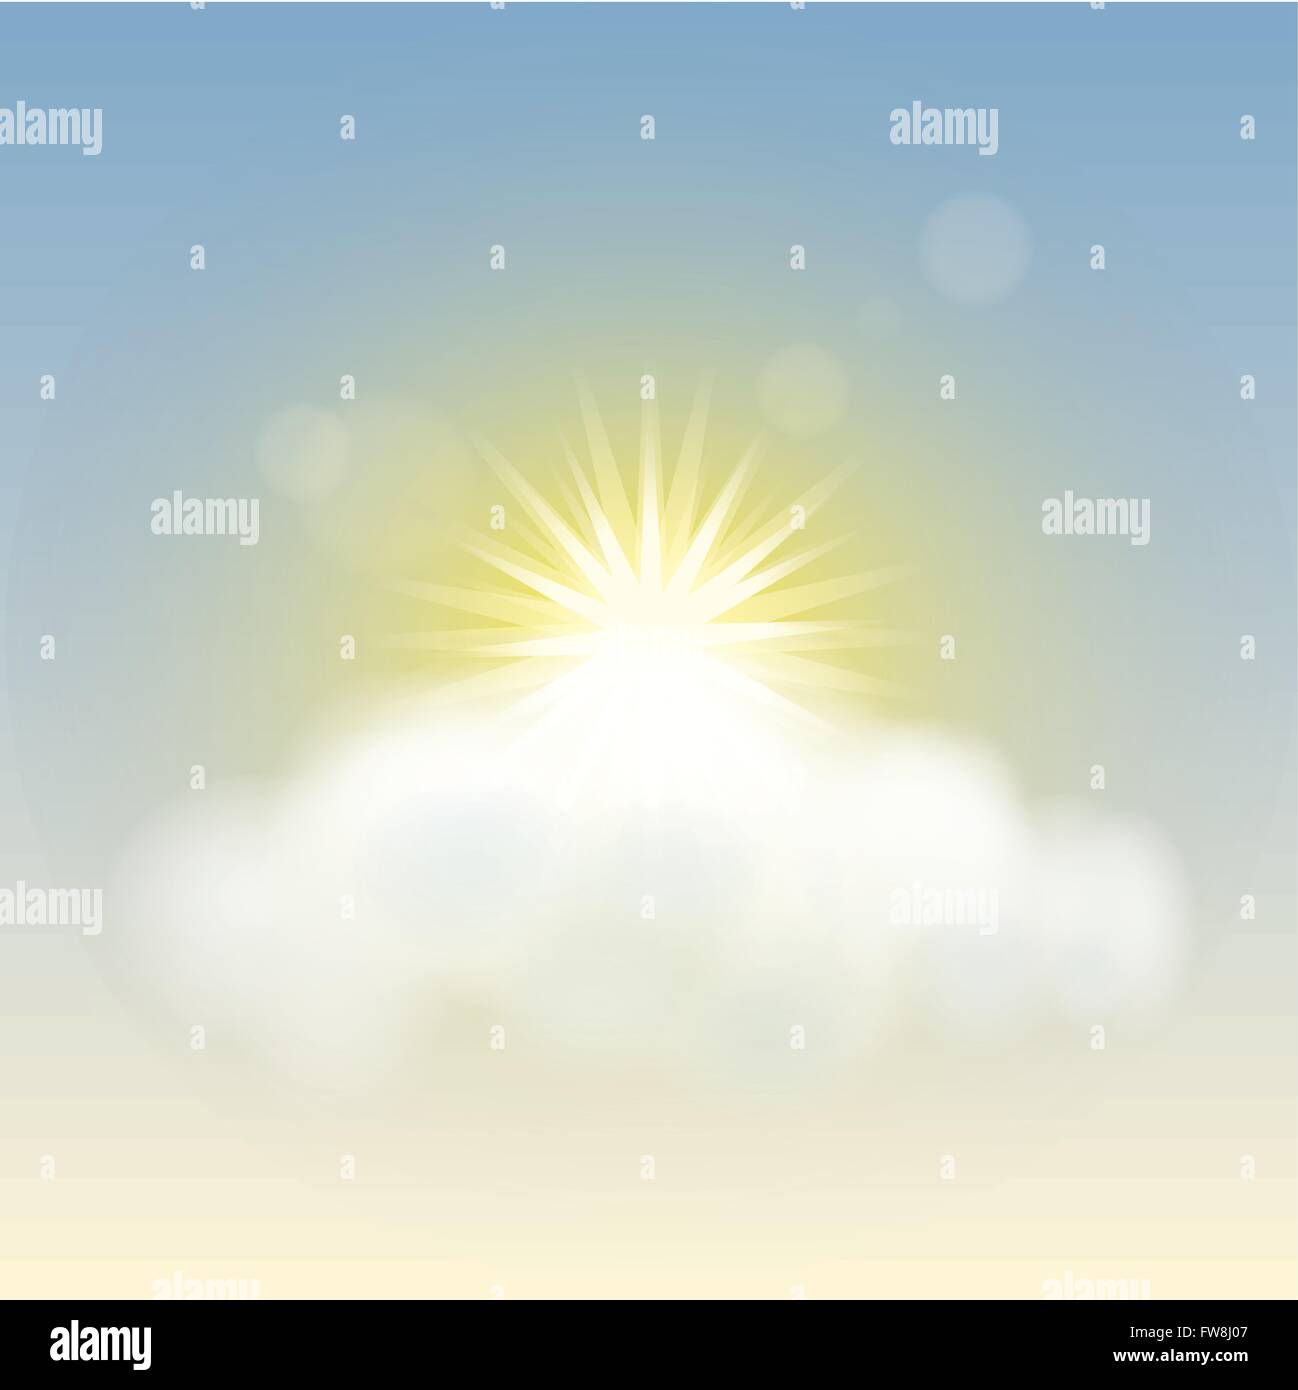 Ilustración vectorial de sun y cloud Ilustración del Vector